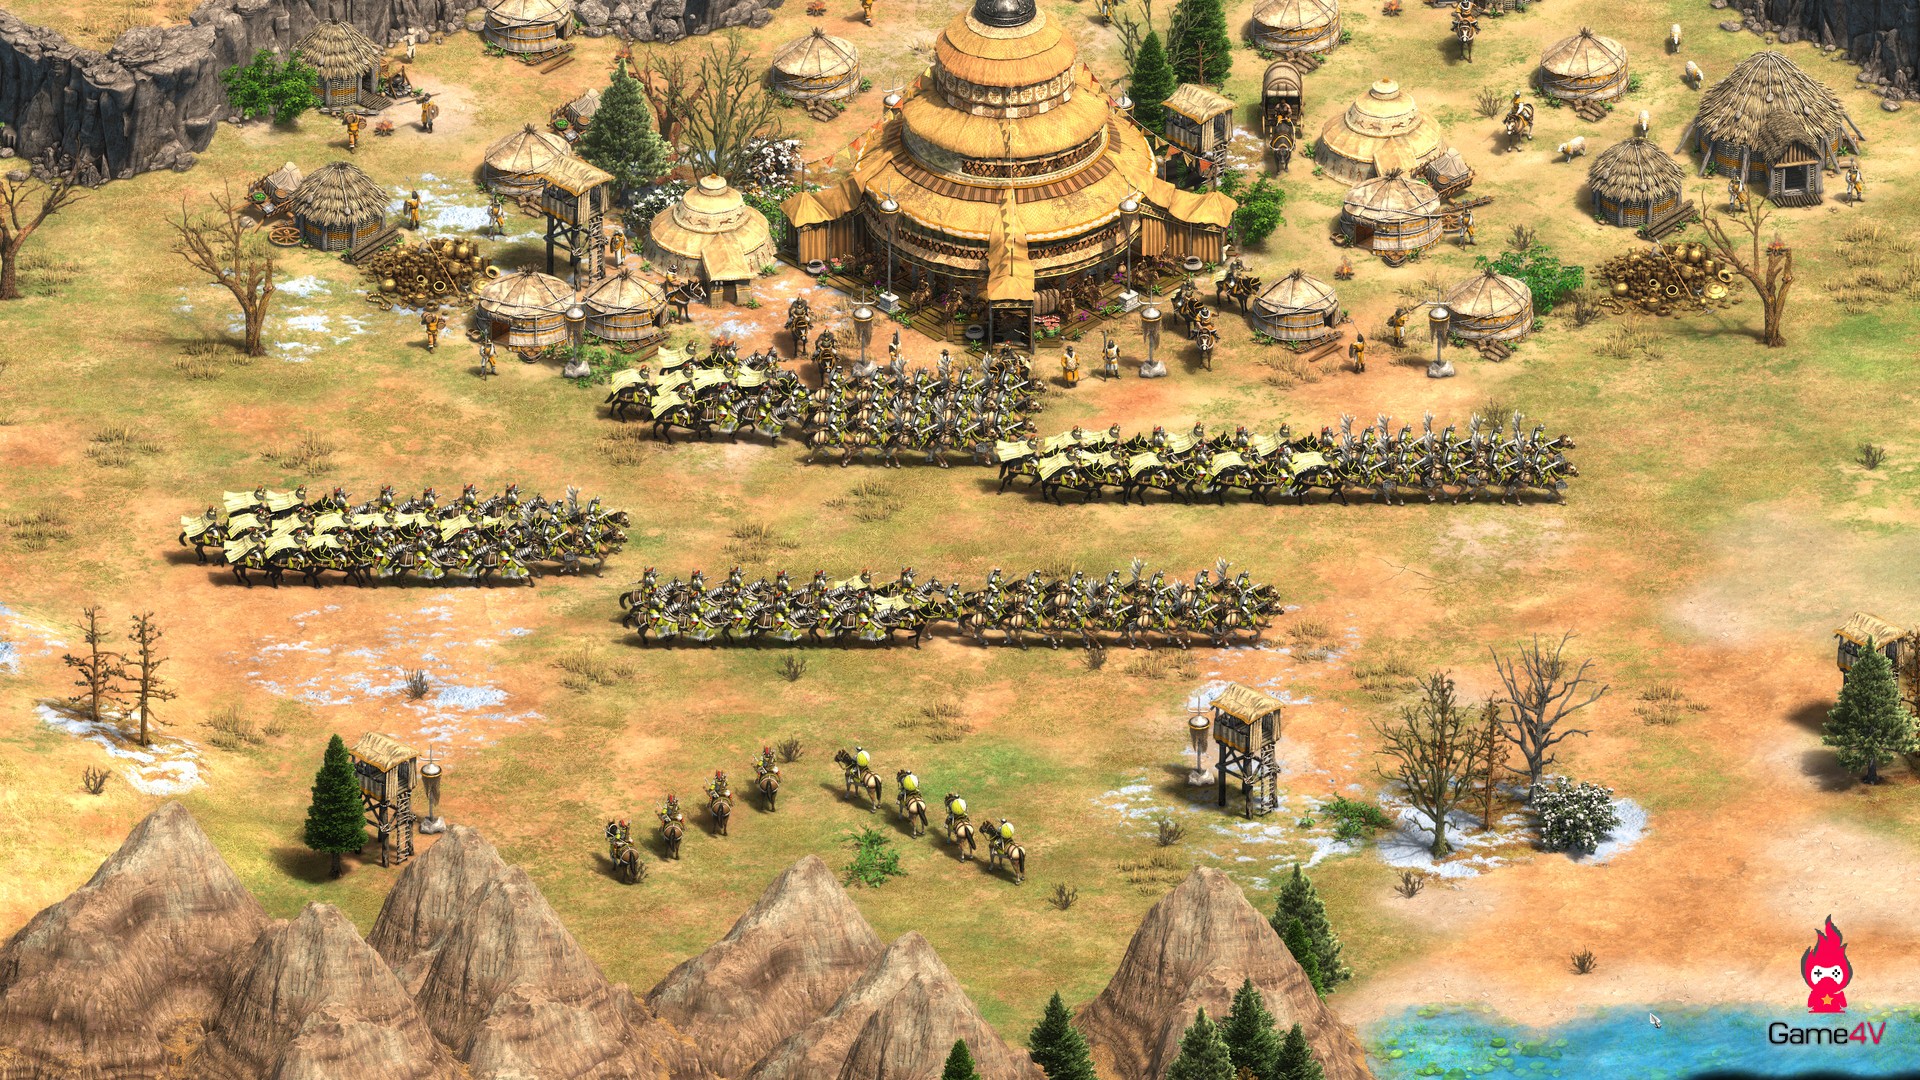 98+] Age of Empires Wallpapers - WallpaperSafari